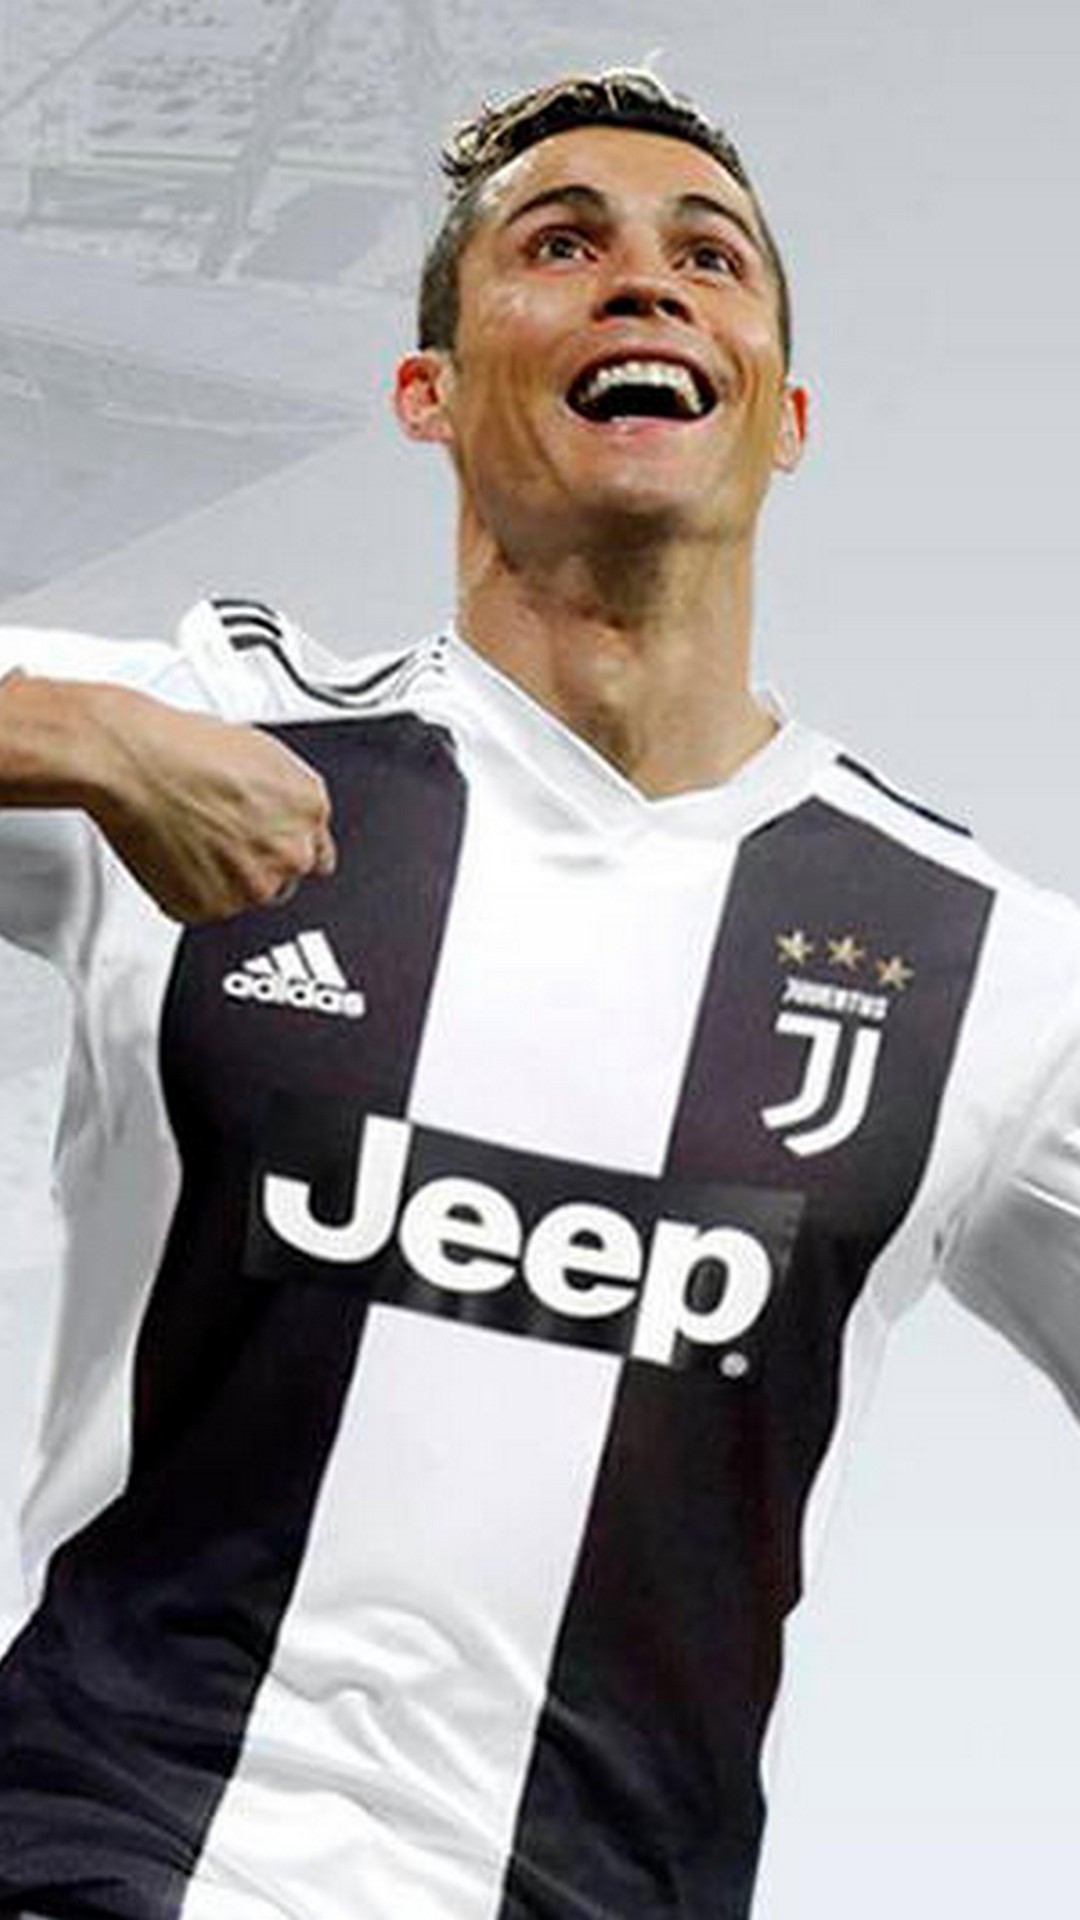 Start Download Ronaldo In Juventus Jersey 1205228 Hd